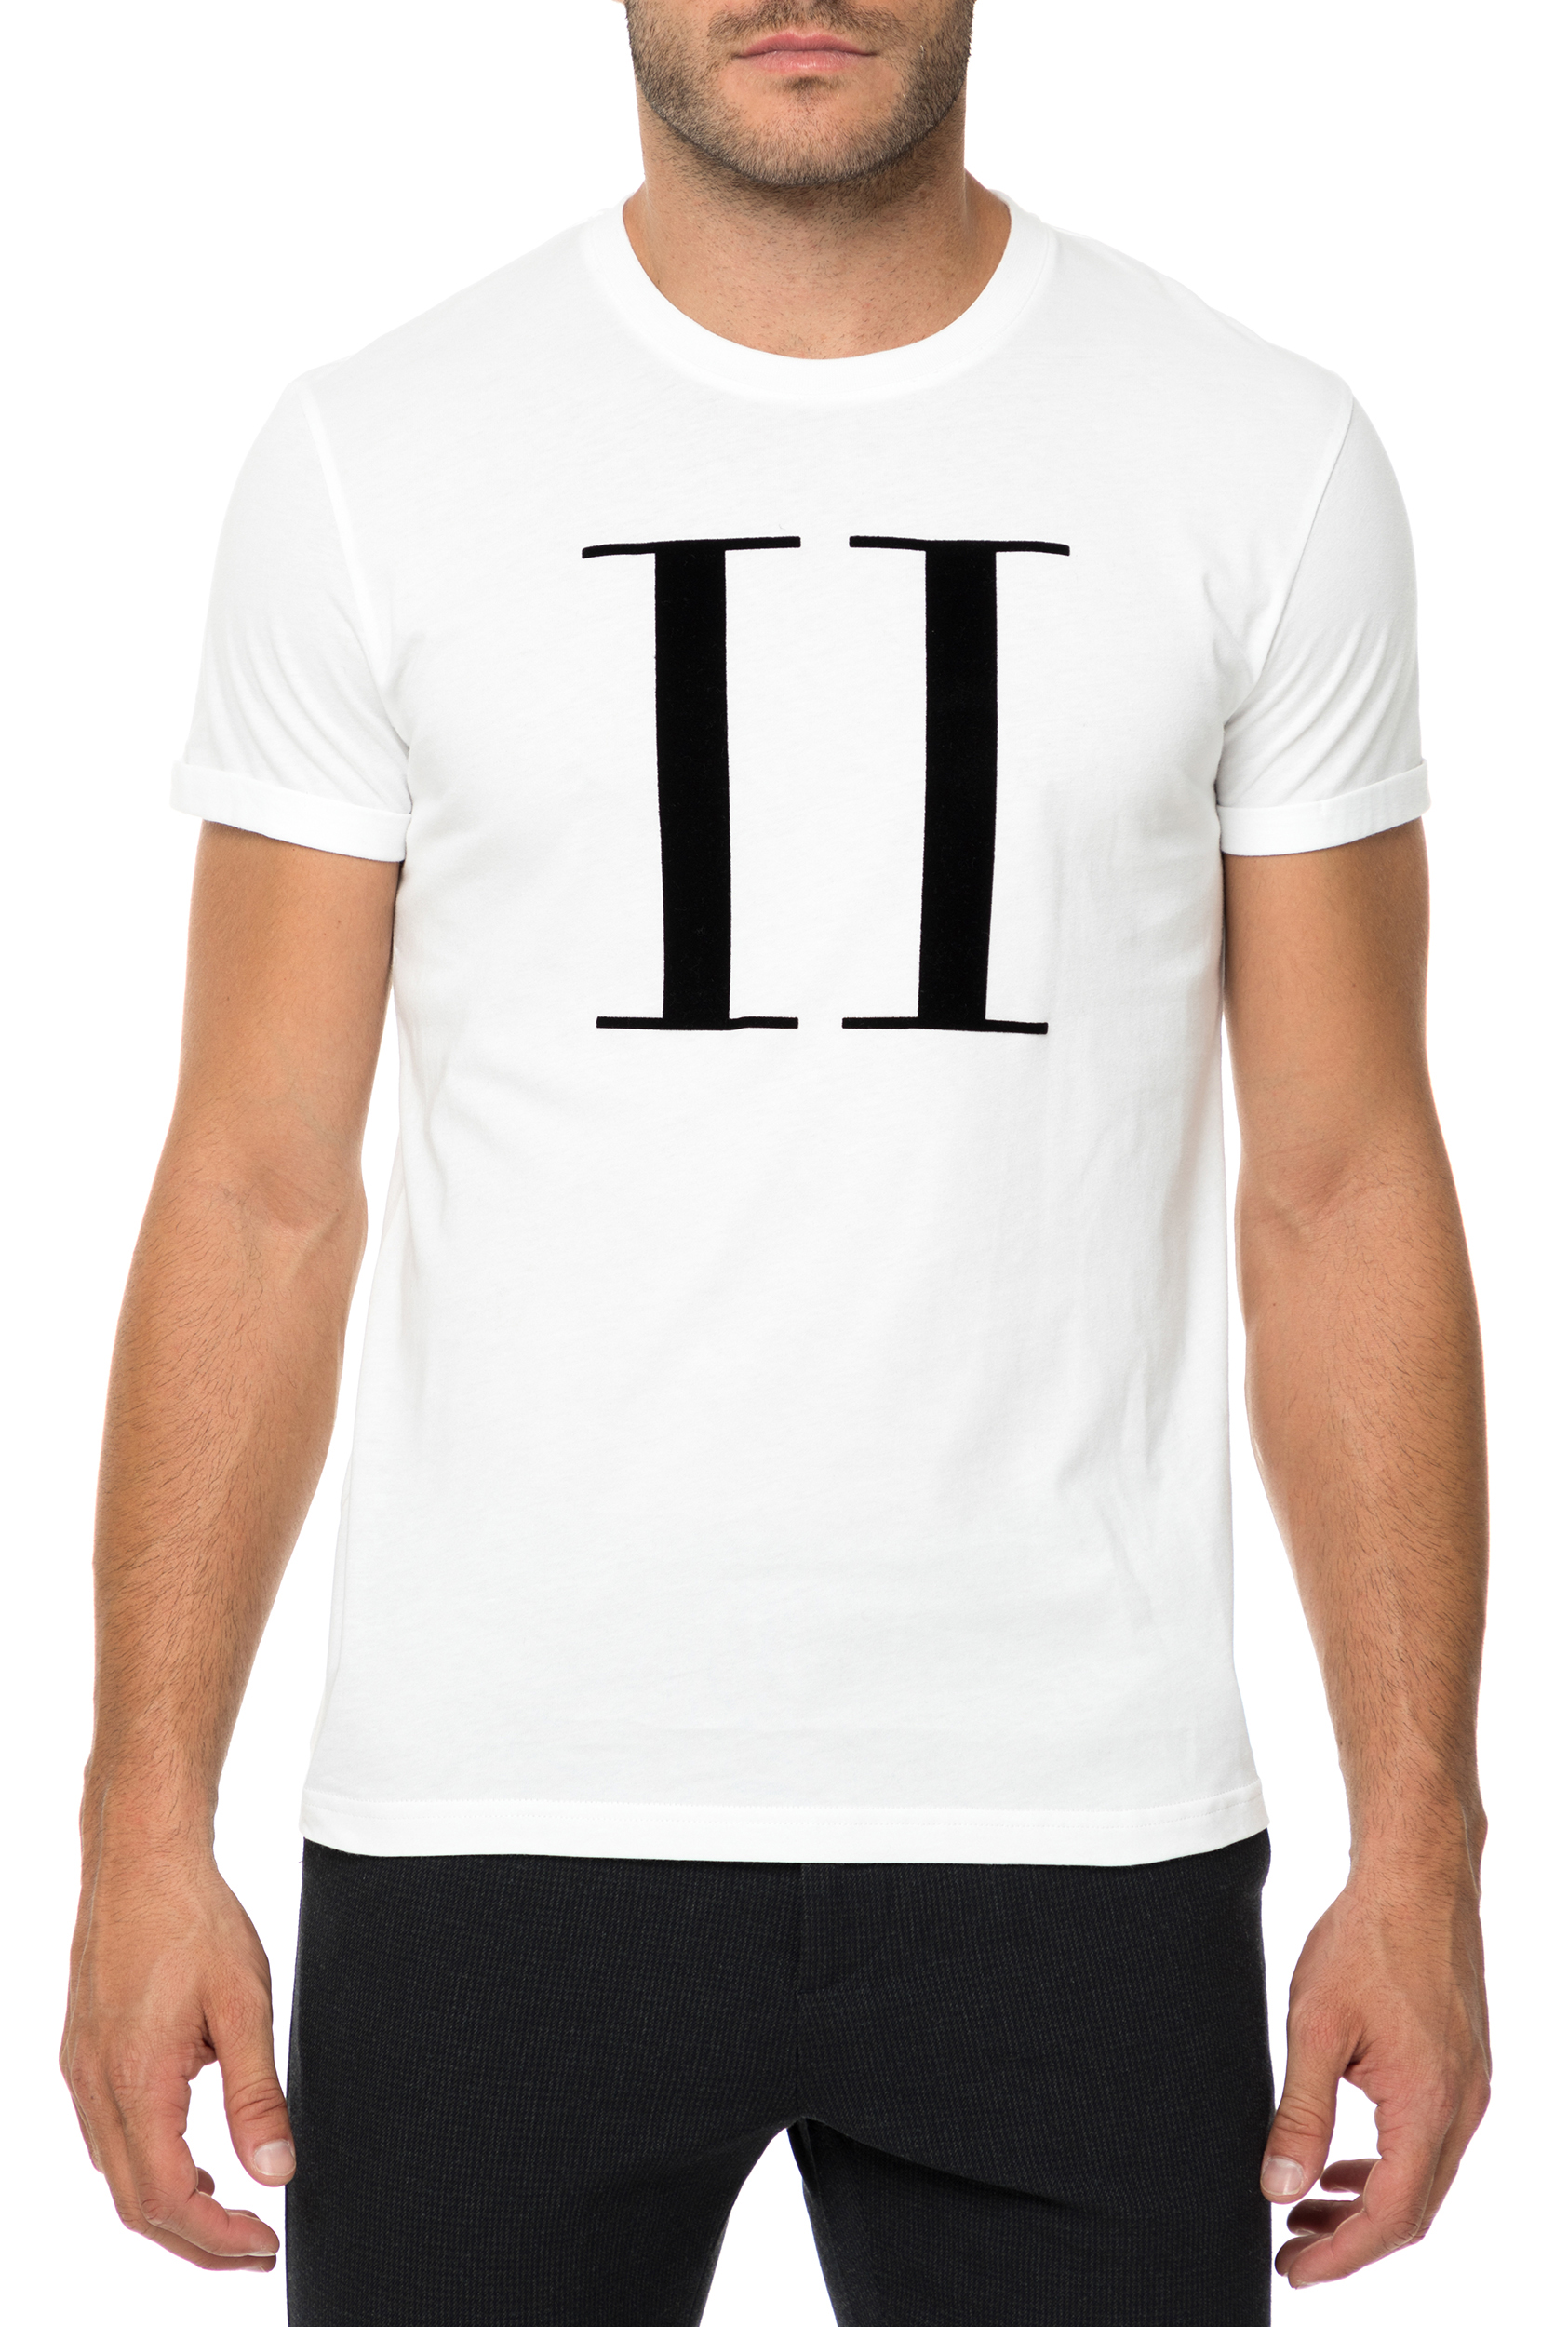 Ανδρικά/Ρούχα/Μπλούζες/Κοντομάνικες LES DEUX - Ανδρική κοντομάνικη μπλούζα Encore λευκή